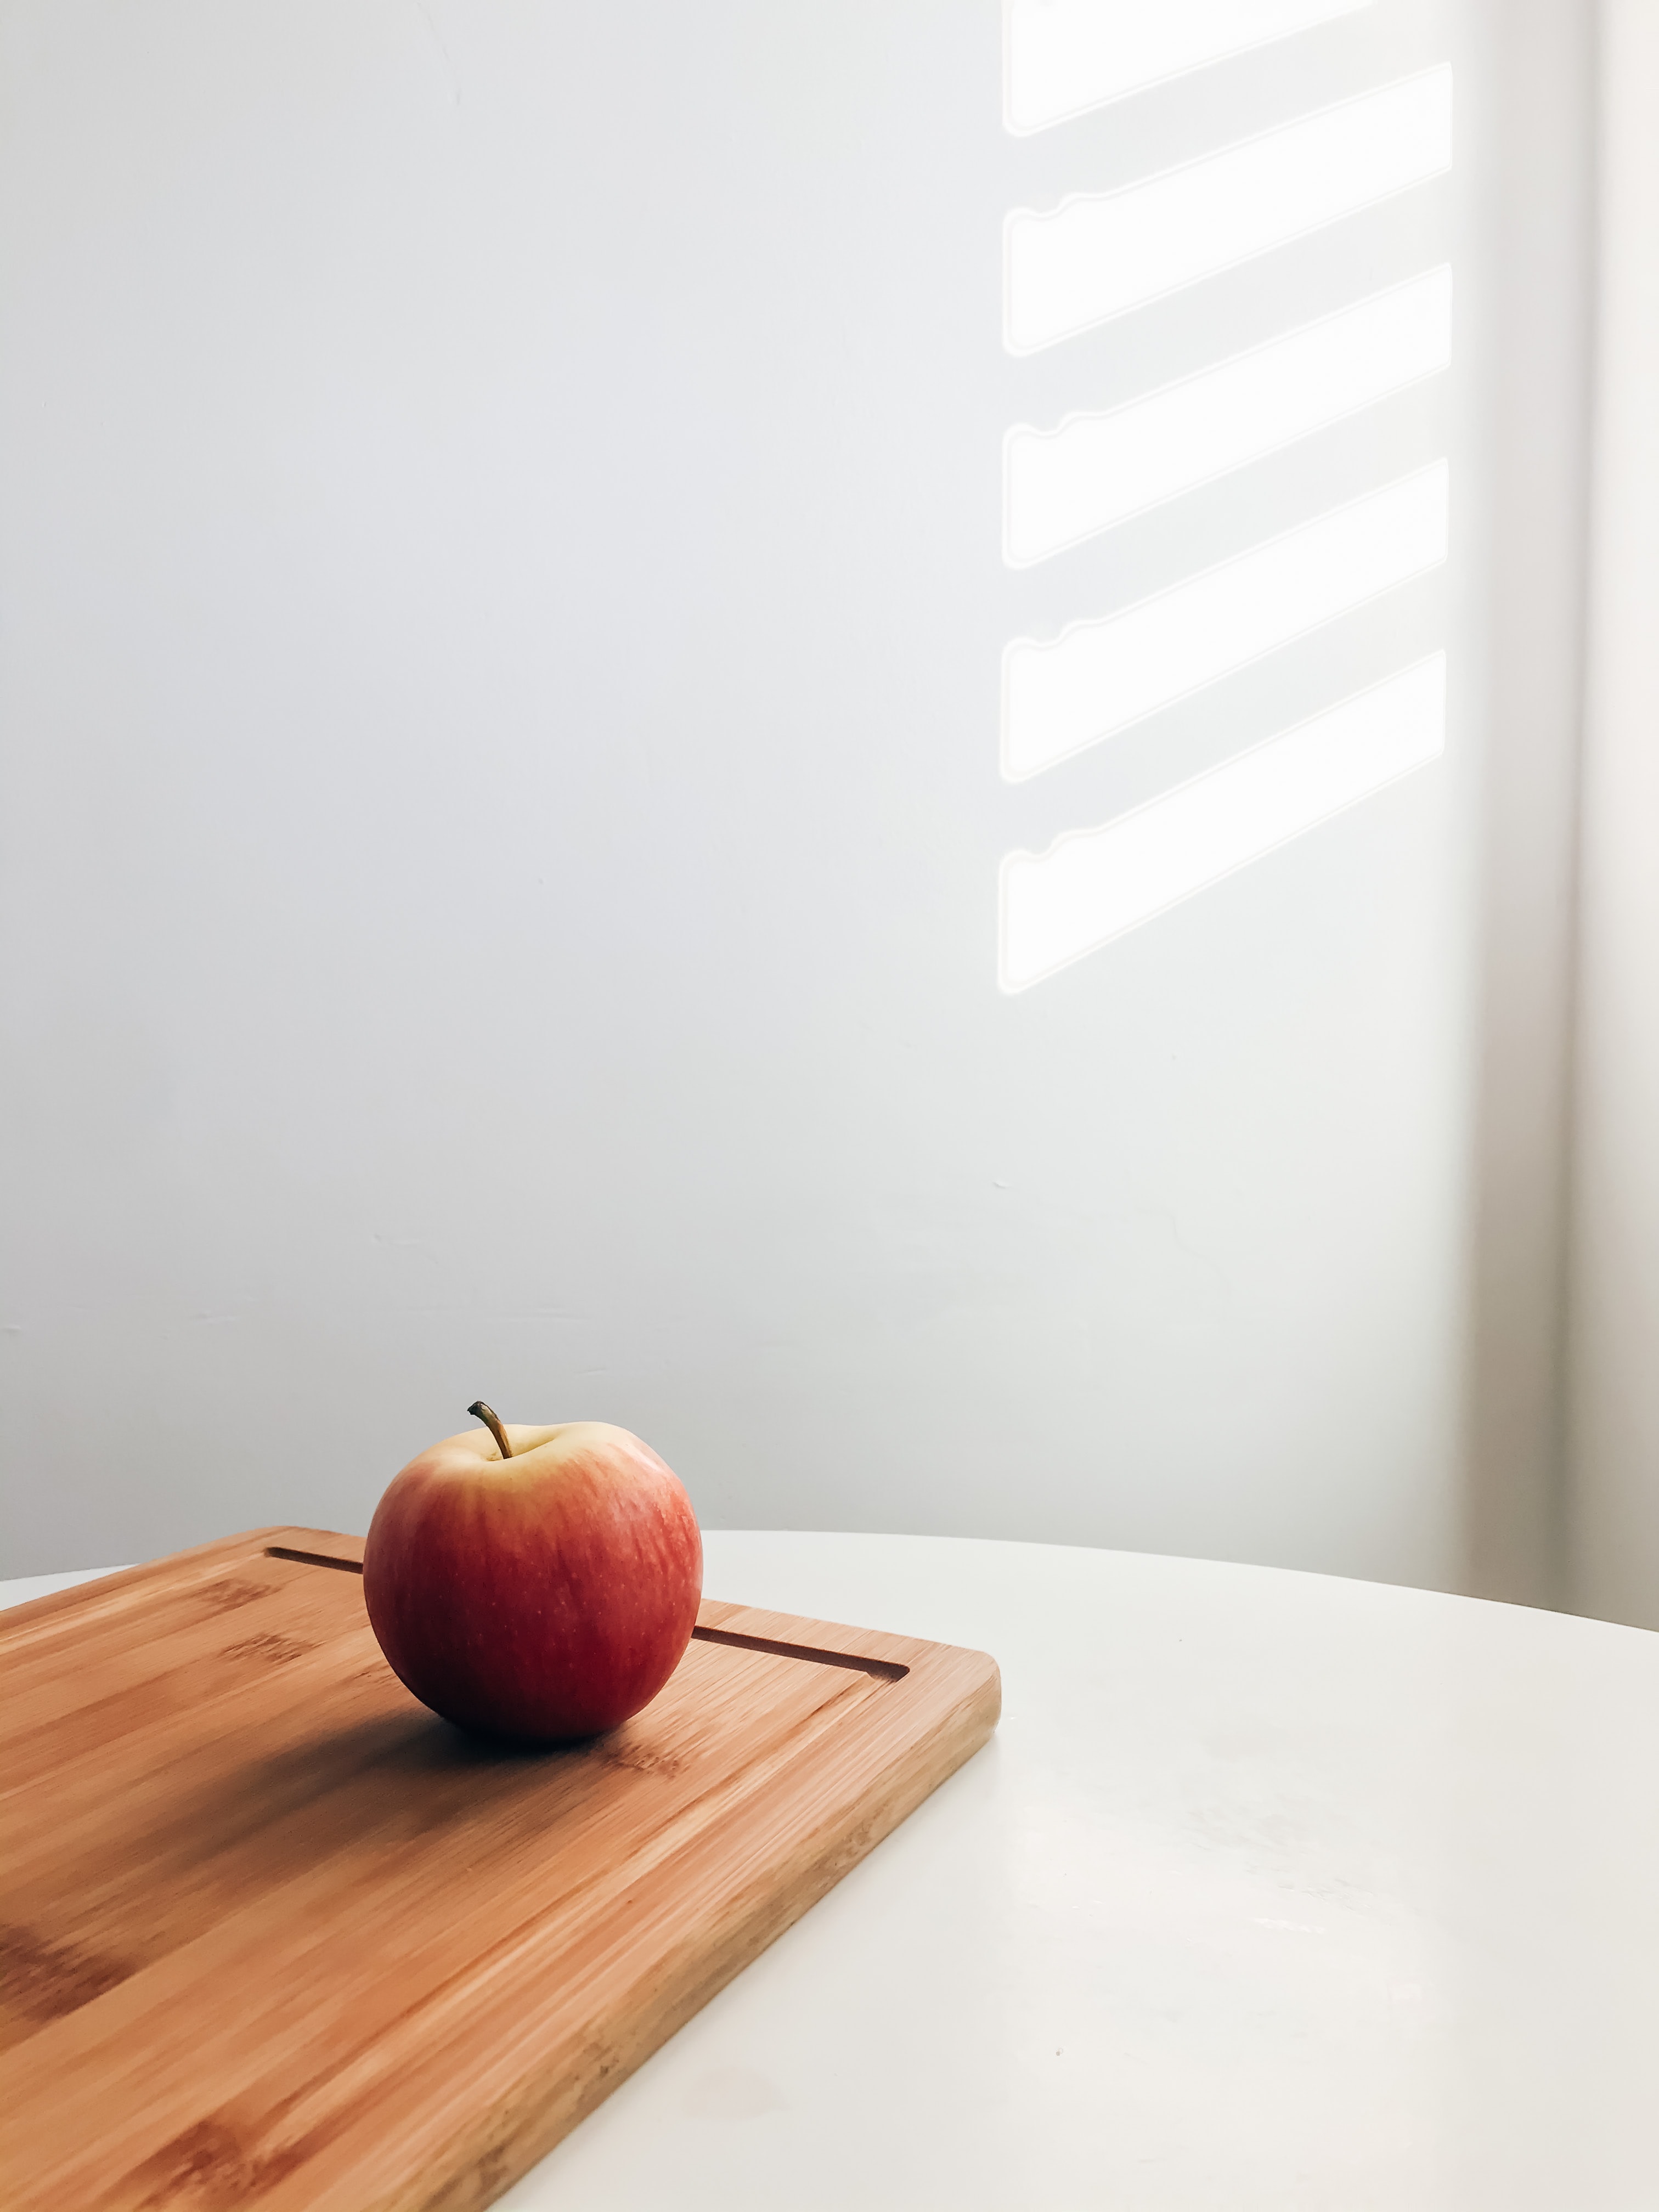 minimalism, food, apple, table, board